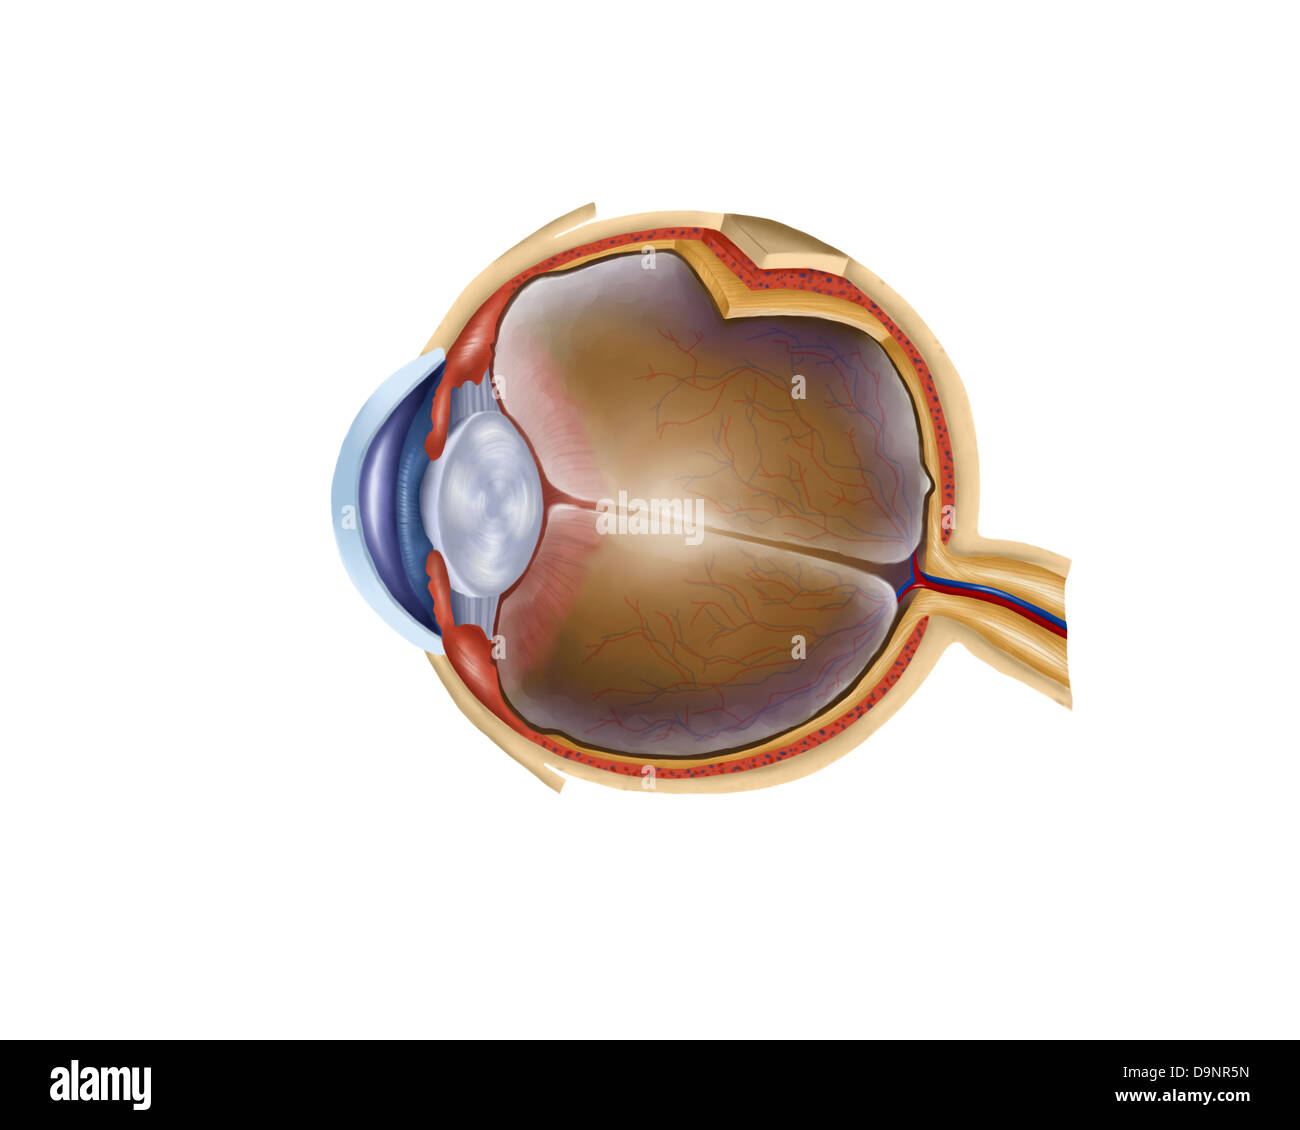 Anatomia di occhio umano. Foto Stock